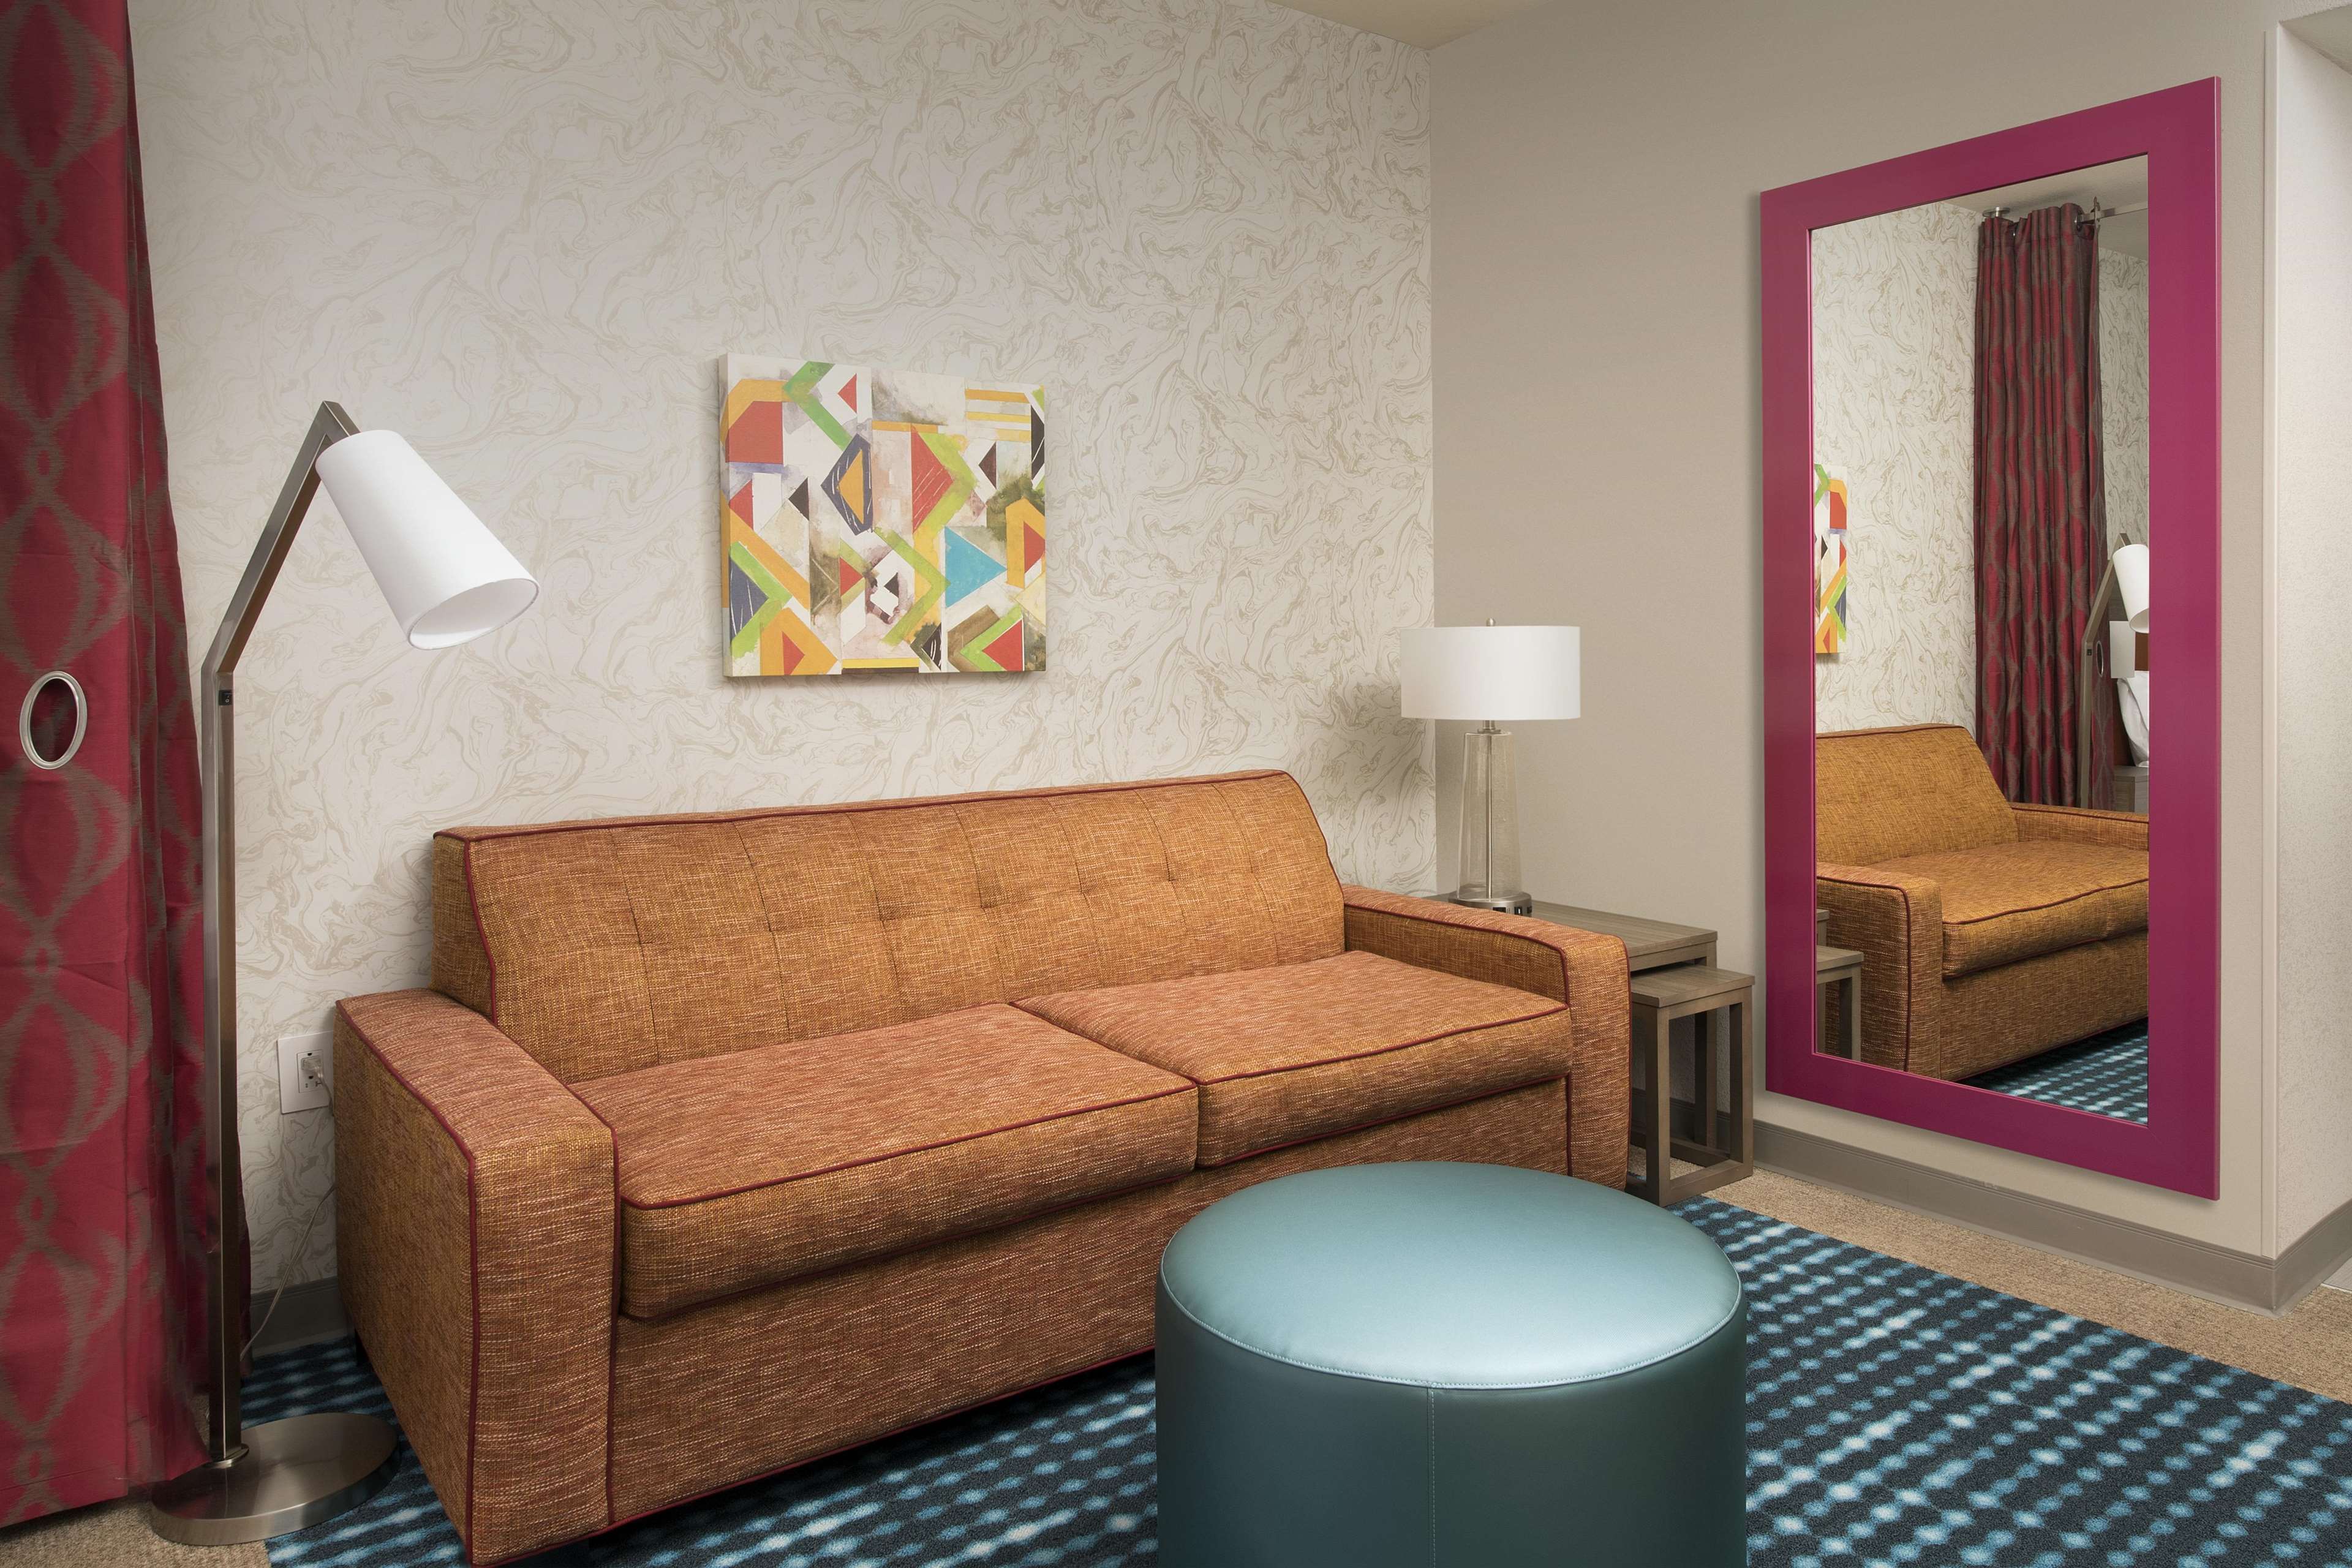 Home2 Suites by Hilton Las Cruces Photo